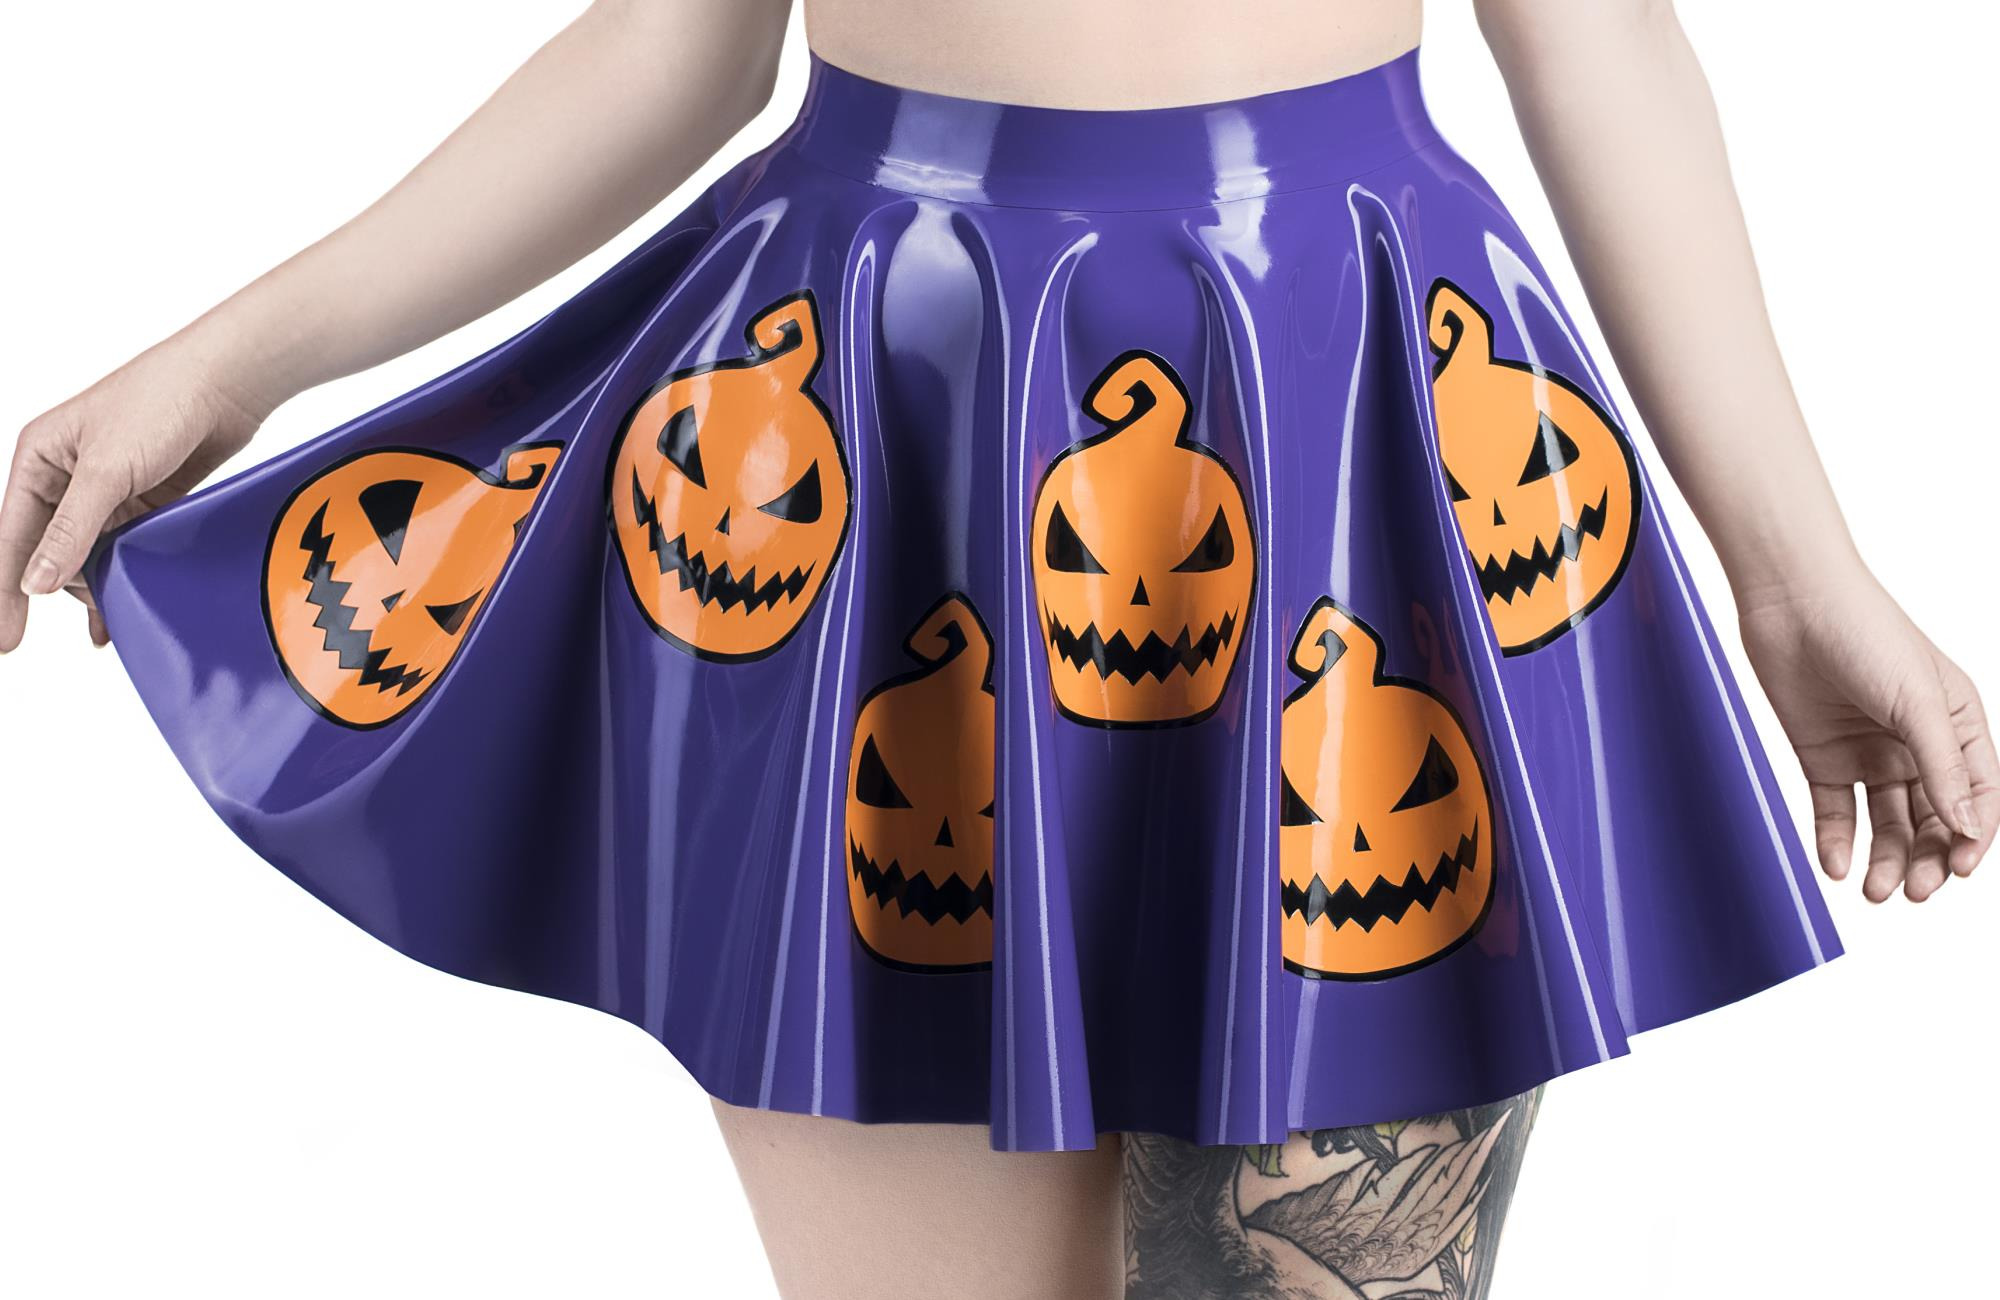 Spooky Sale: Genießen Sie Halloween mit 20% Rabatt auf alle PVC-Produkte!